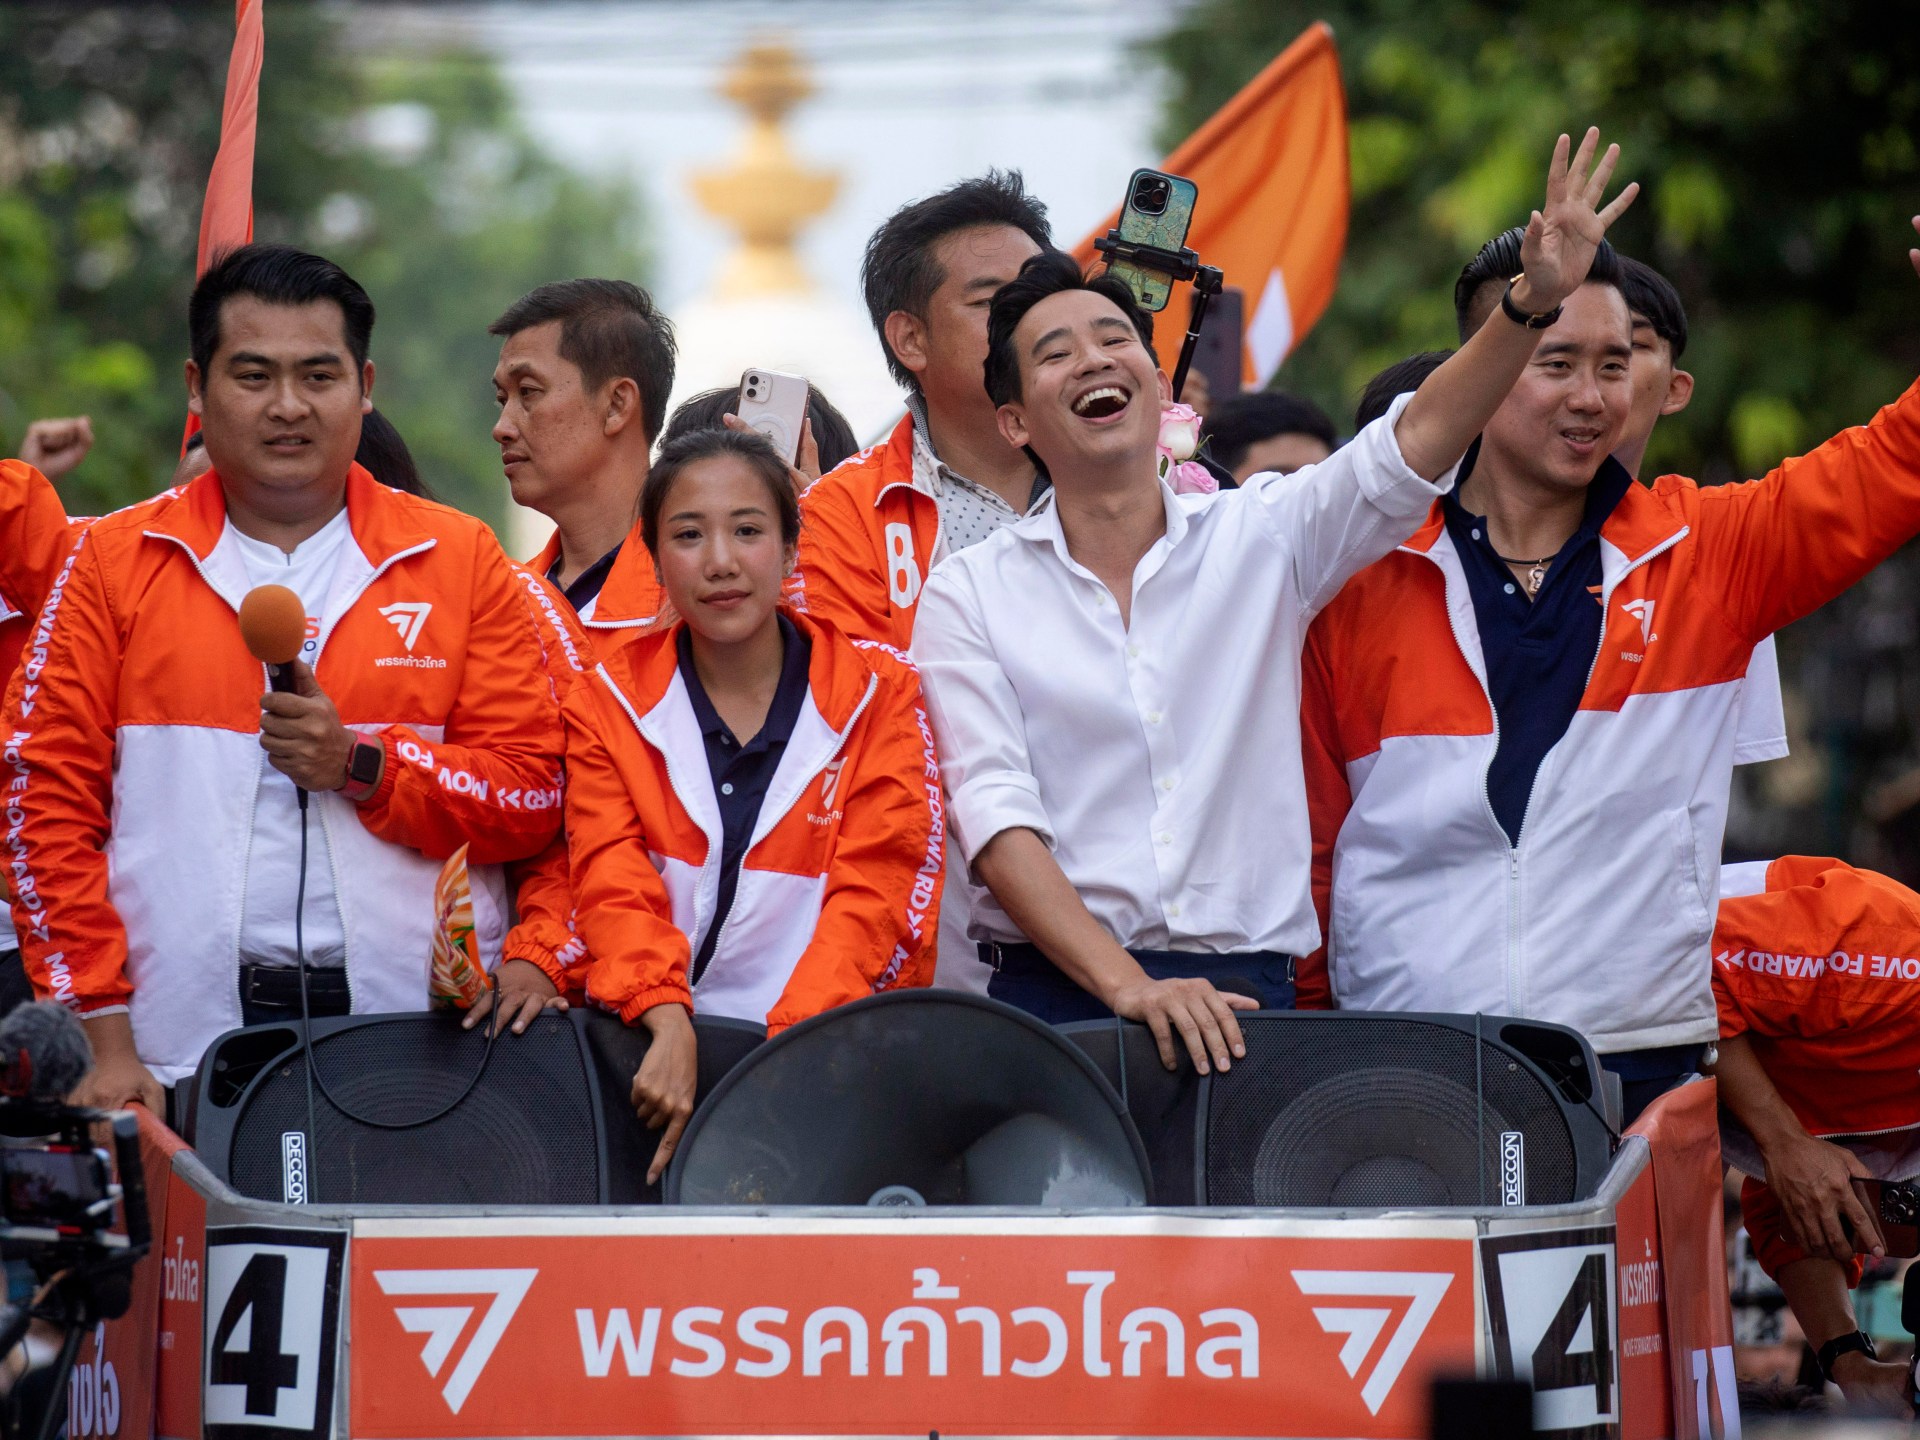 لماذا يمكن لأربع قضايا أمام المحكمة أن تطلق العنان لأزمة جديدة في السياسة التايلاندية |  أخبار المحاكم